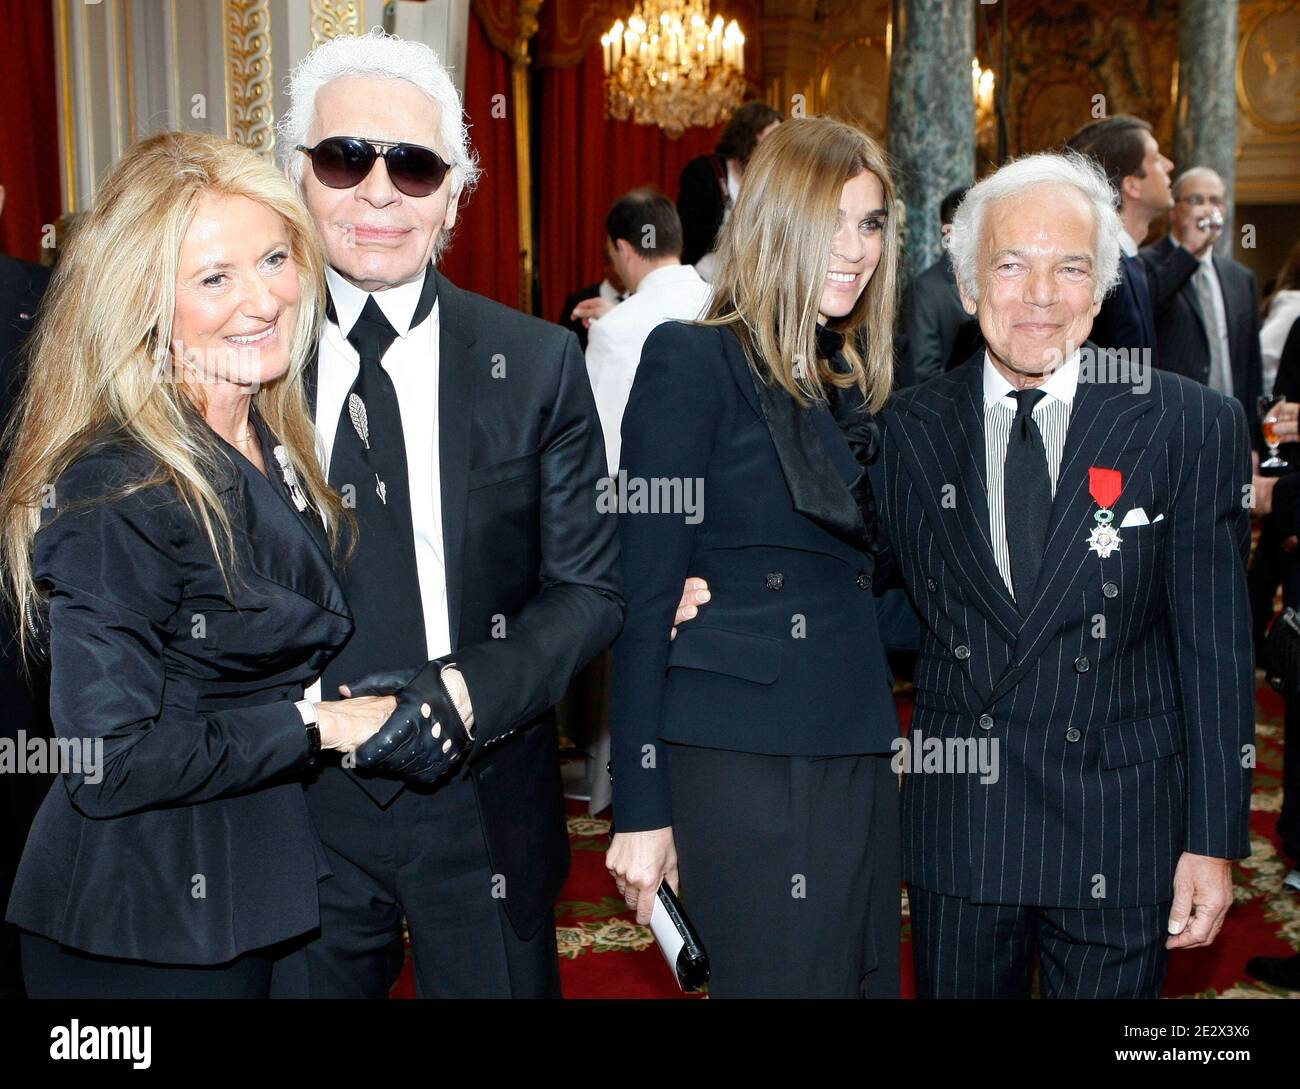 Il fashion designer statunitense Ralph Lauren, a destra, ha premiato  Chevalier della Legione d'onore, una delle distinzioni più prestigiose  della Francia, affiancato dal redattore capo dell'edizione francese di  Vogue, Carine Roitfeld, seconda